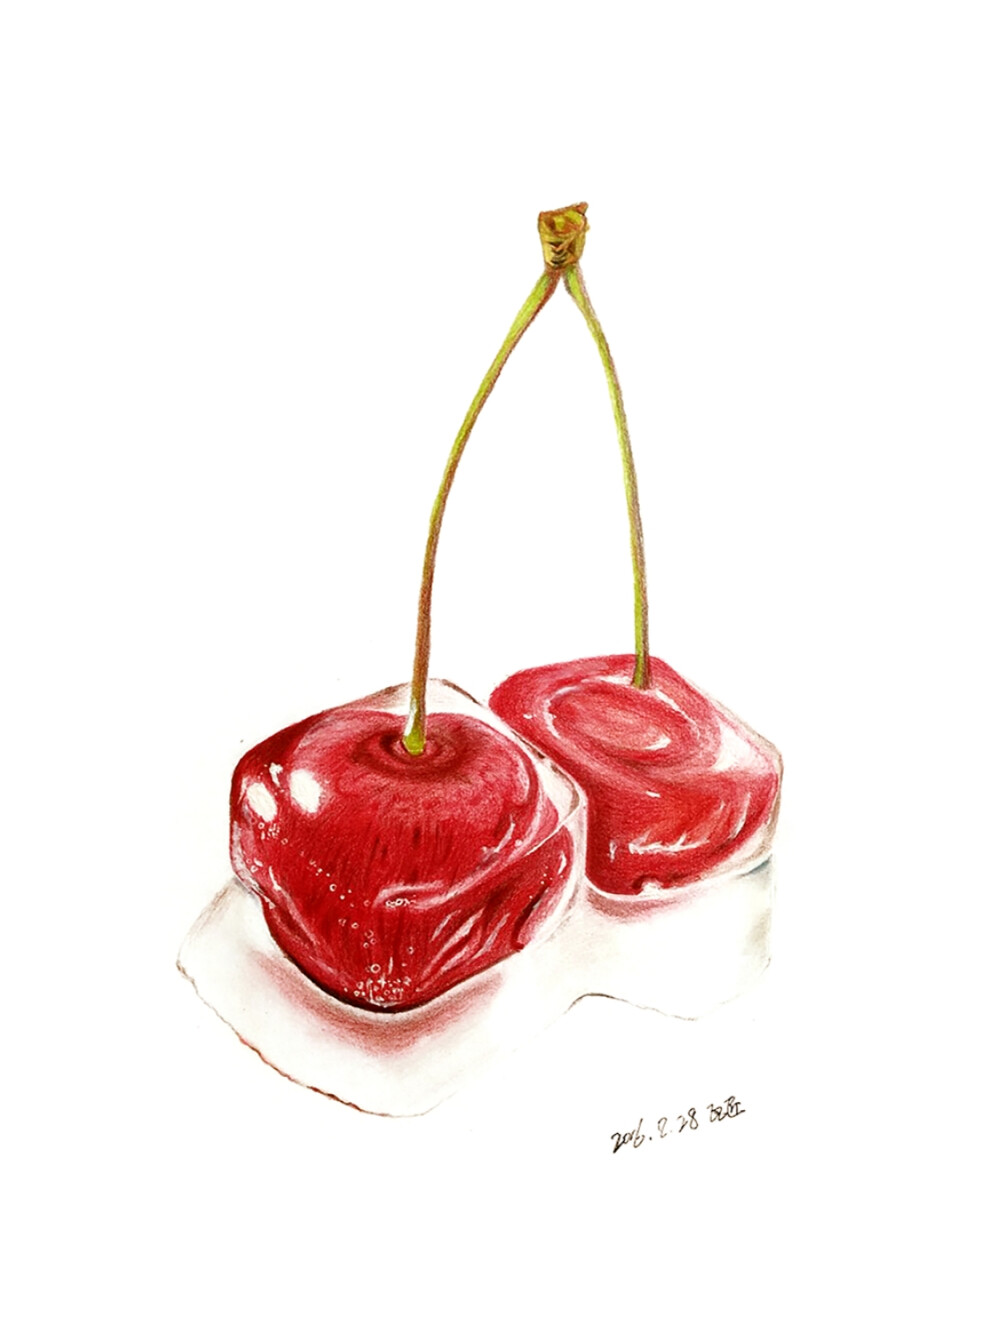 彩铅手绘――樱桃